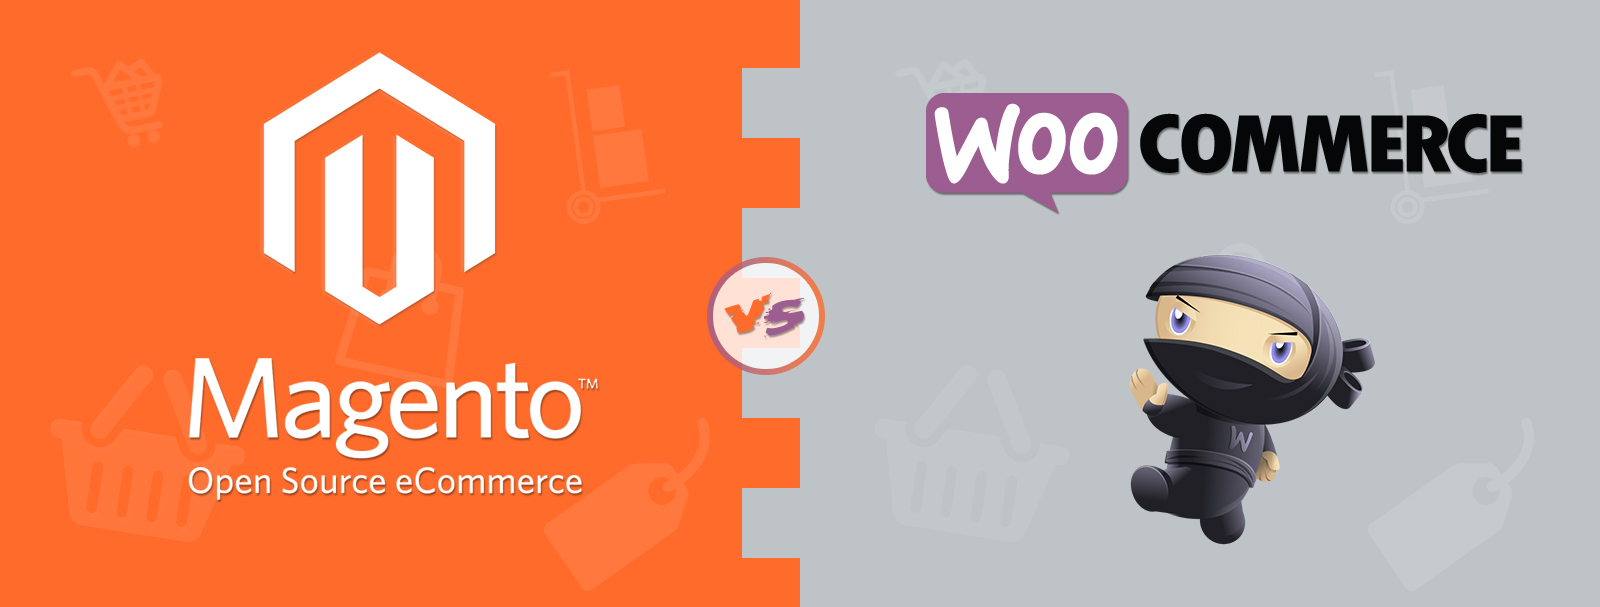 WooCommerce против Magento – Что лучше для Вашего бизнеса?